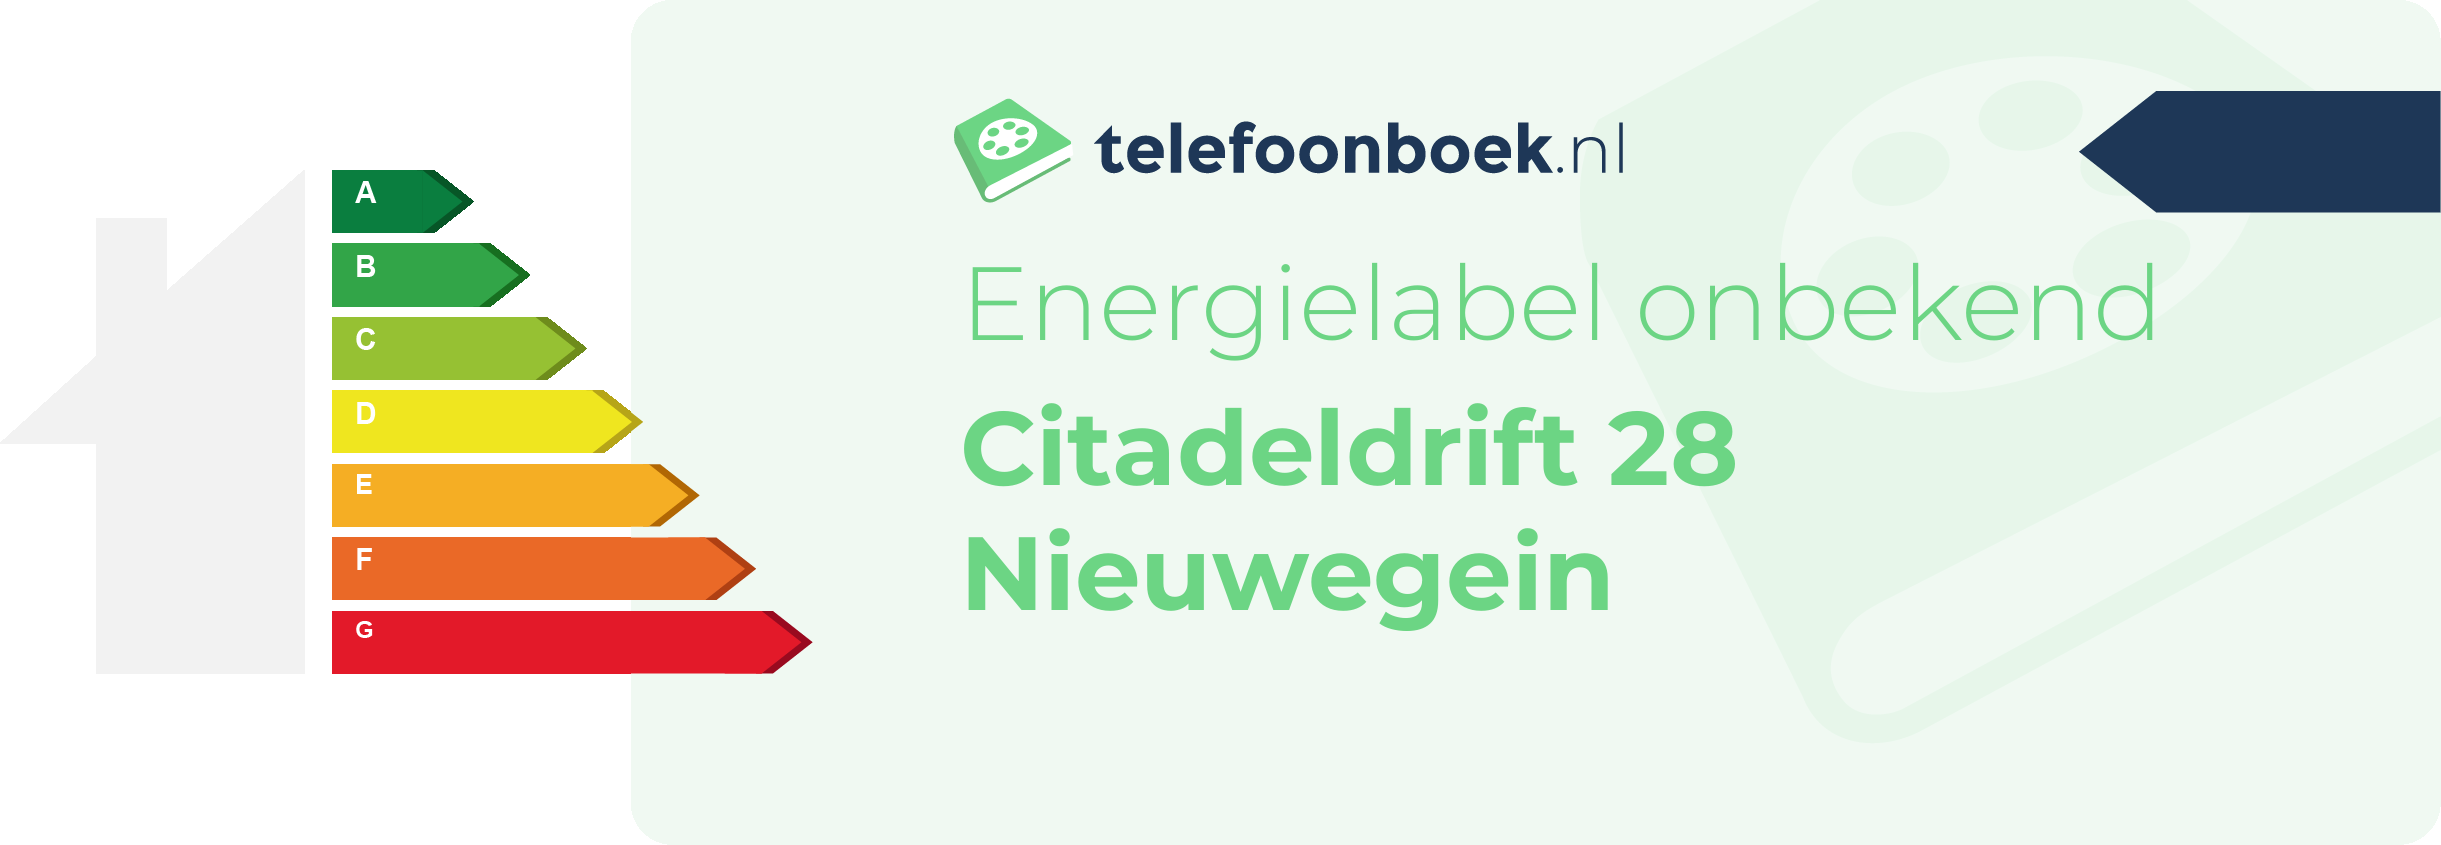 Energielabel Citadeldrift 28 Nieuwegein